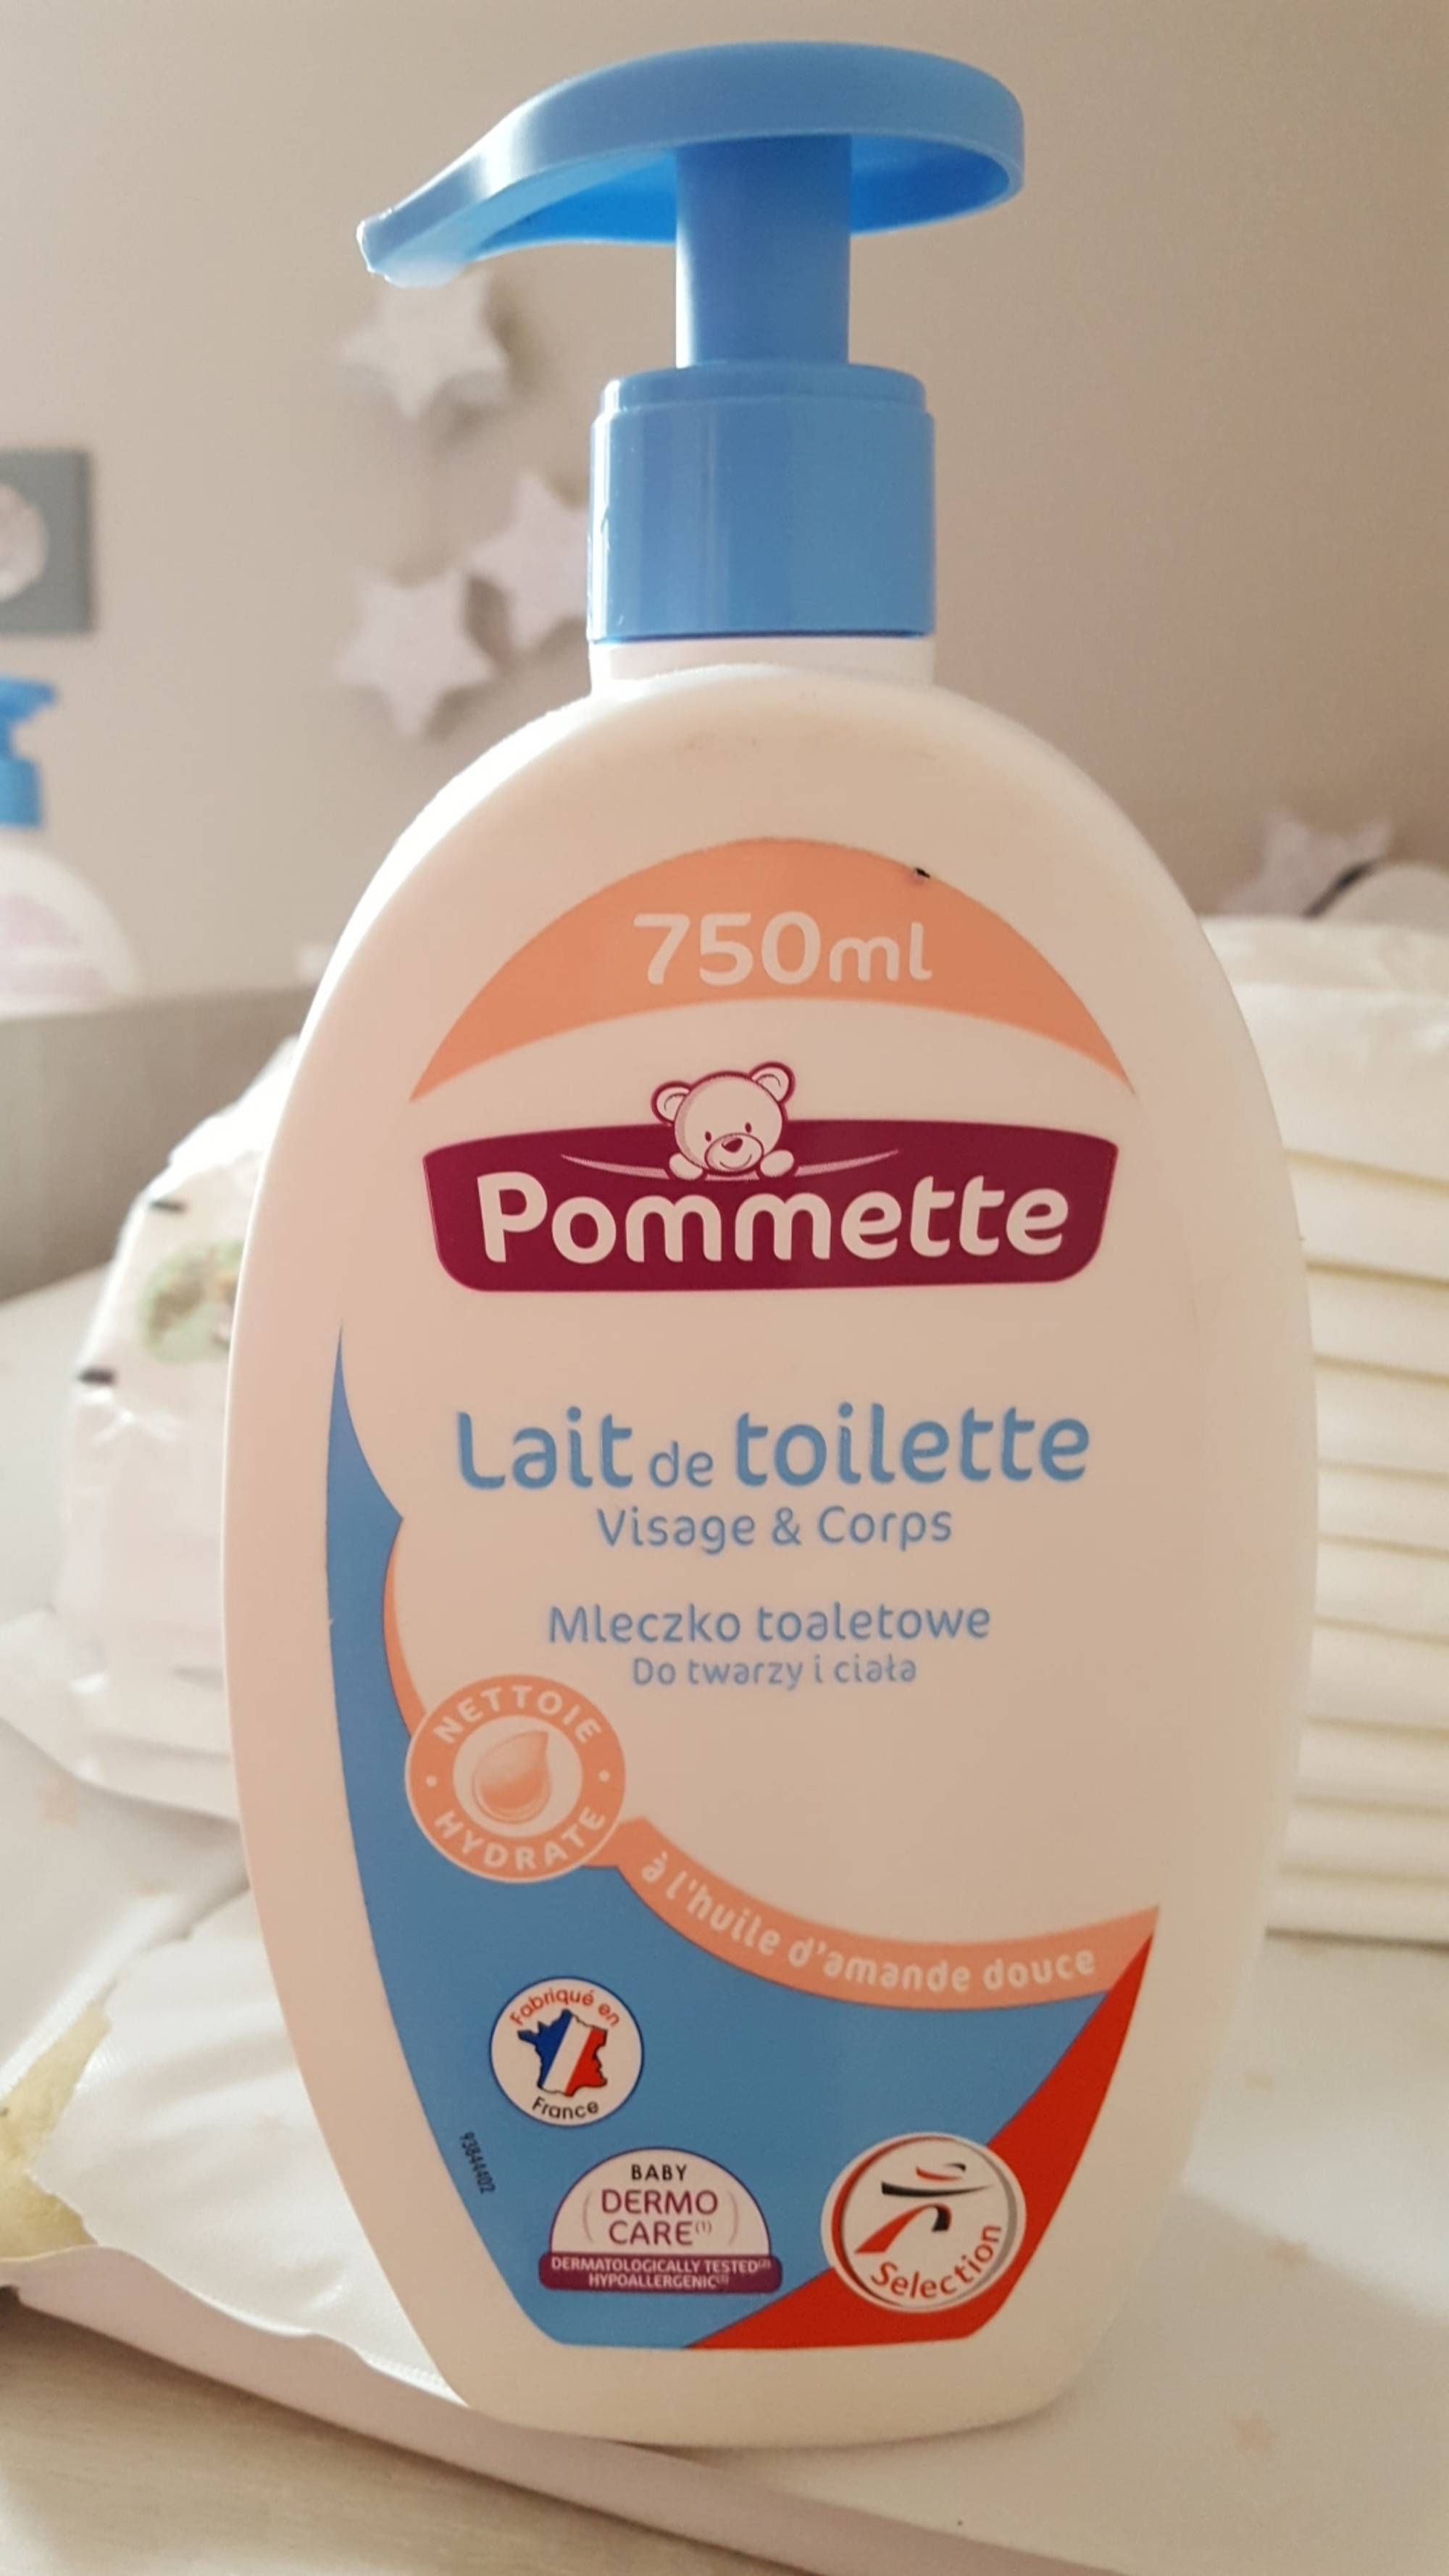 Biolane - Lait de Toilette Douceur - Nettoyant pour le visage, le corps et  le siège des bébés - pompe 750 ml